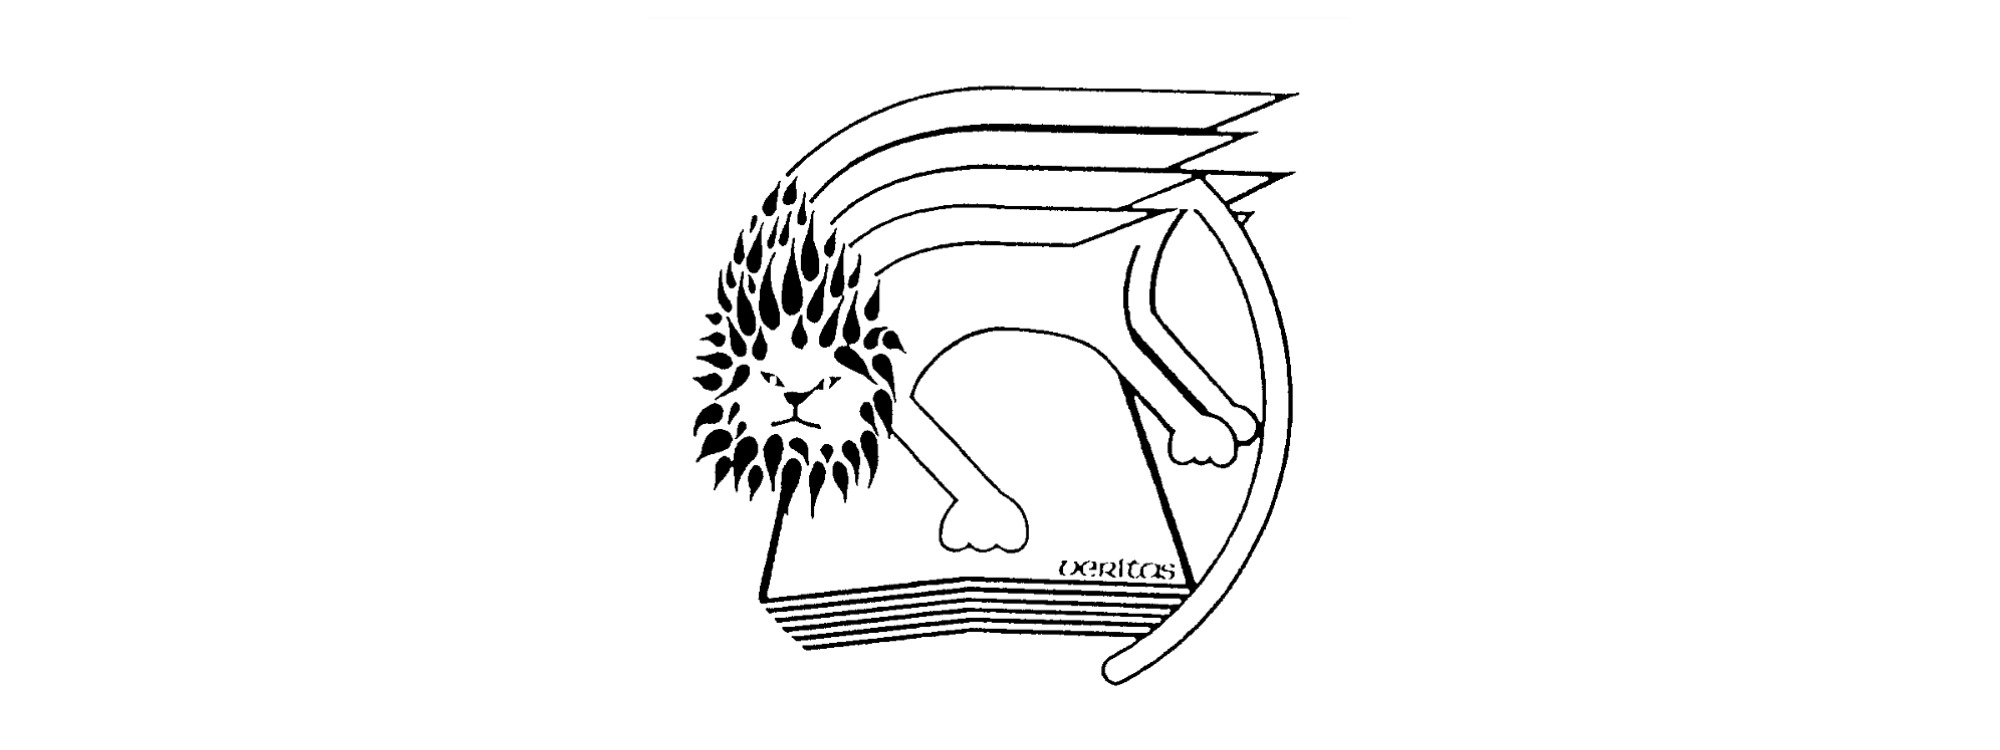 St marks school logo header